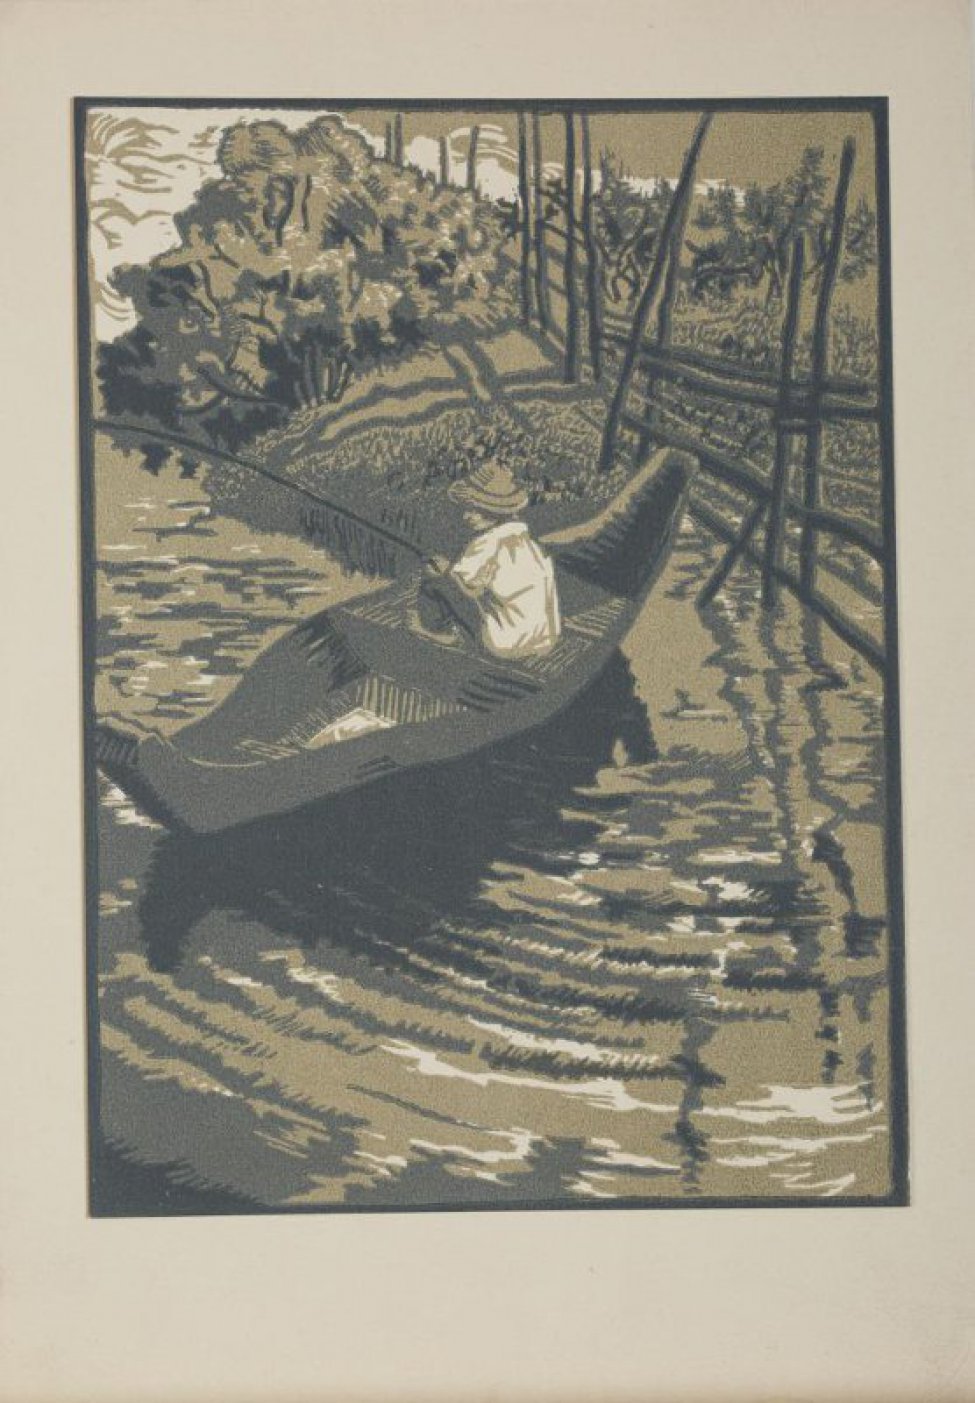 Изображен мальчик в шляпе, сидящий в лодке с удочкой в руках. По берегу идет изгородь, заходящая в воду.